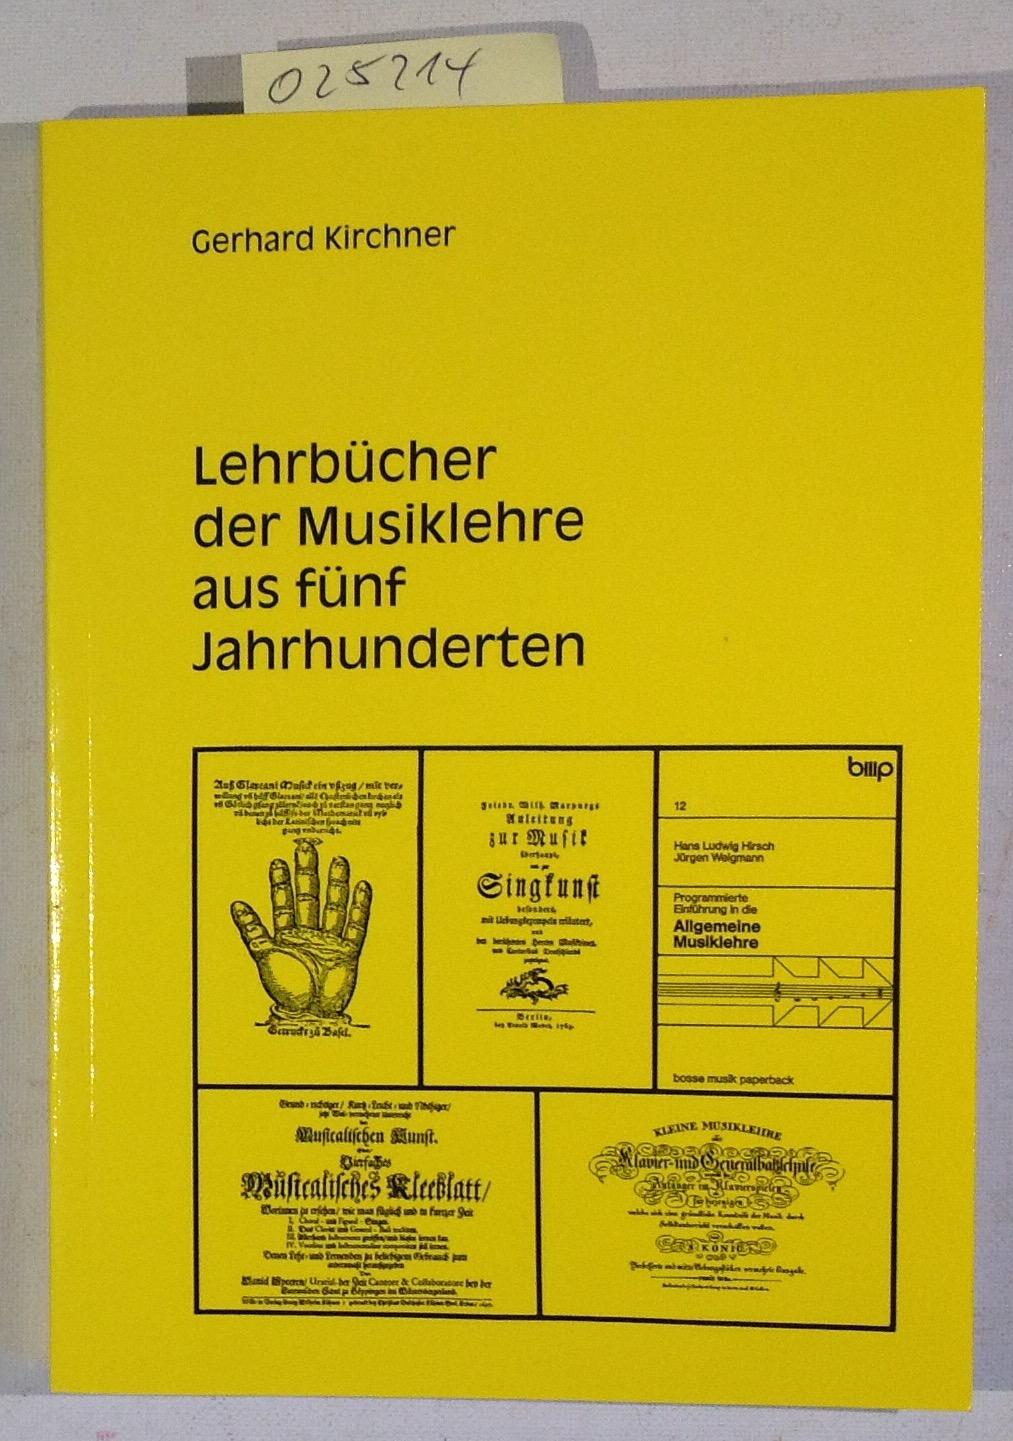 Lehrbücher der Musiklehre aus fünf Jahrhunderten. Eine Sammlung deutschsprachiger gedruckter Schriften. Katalog - Kirchner, Gerhard